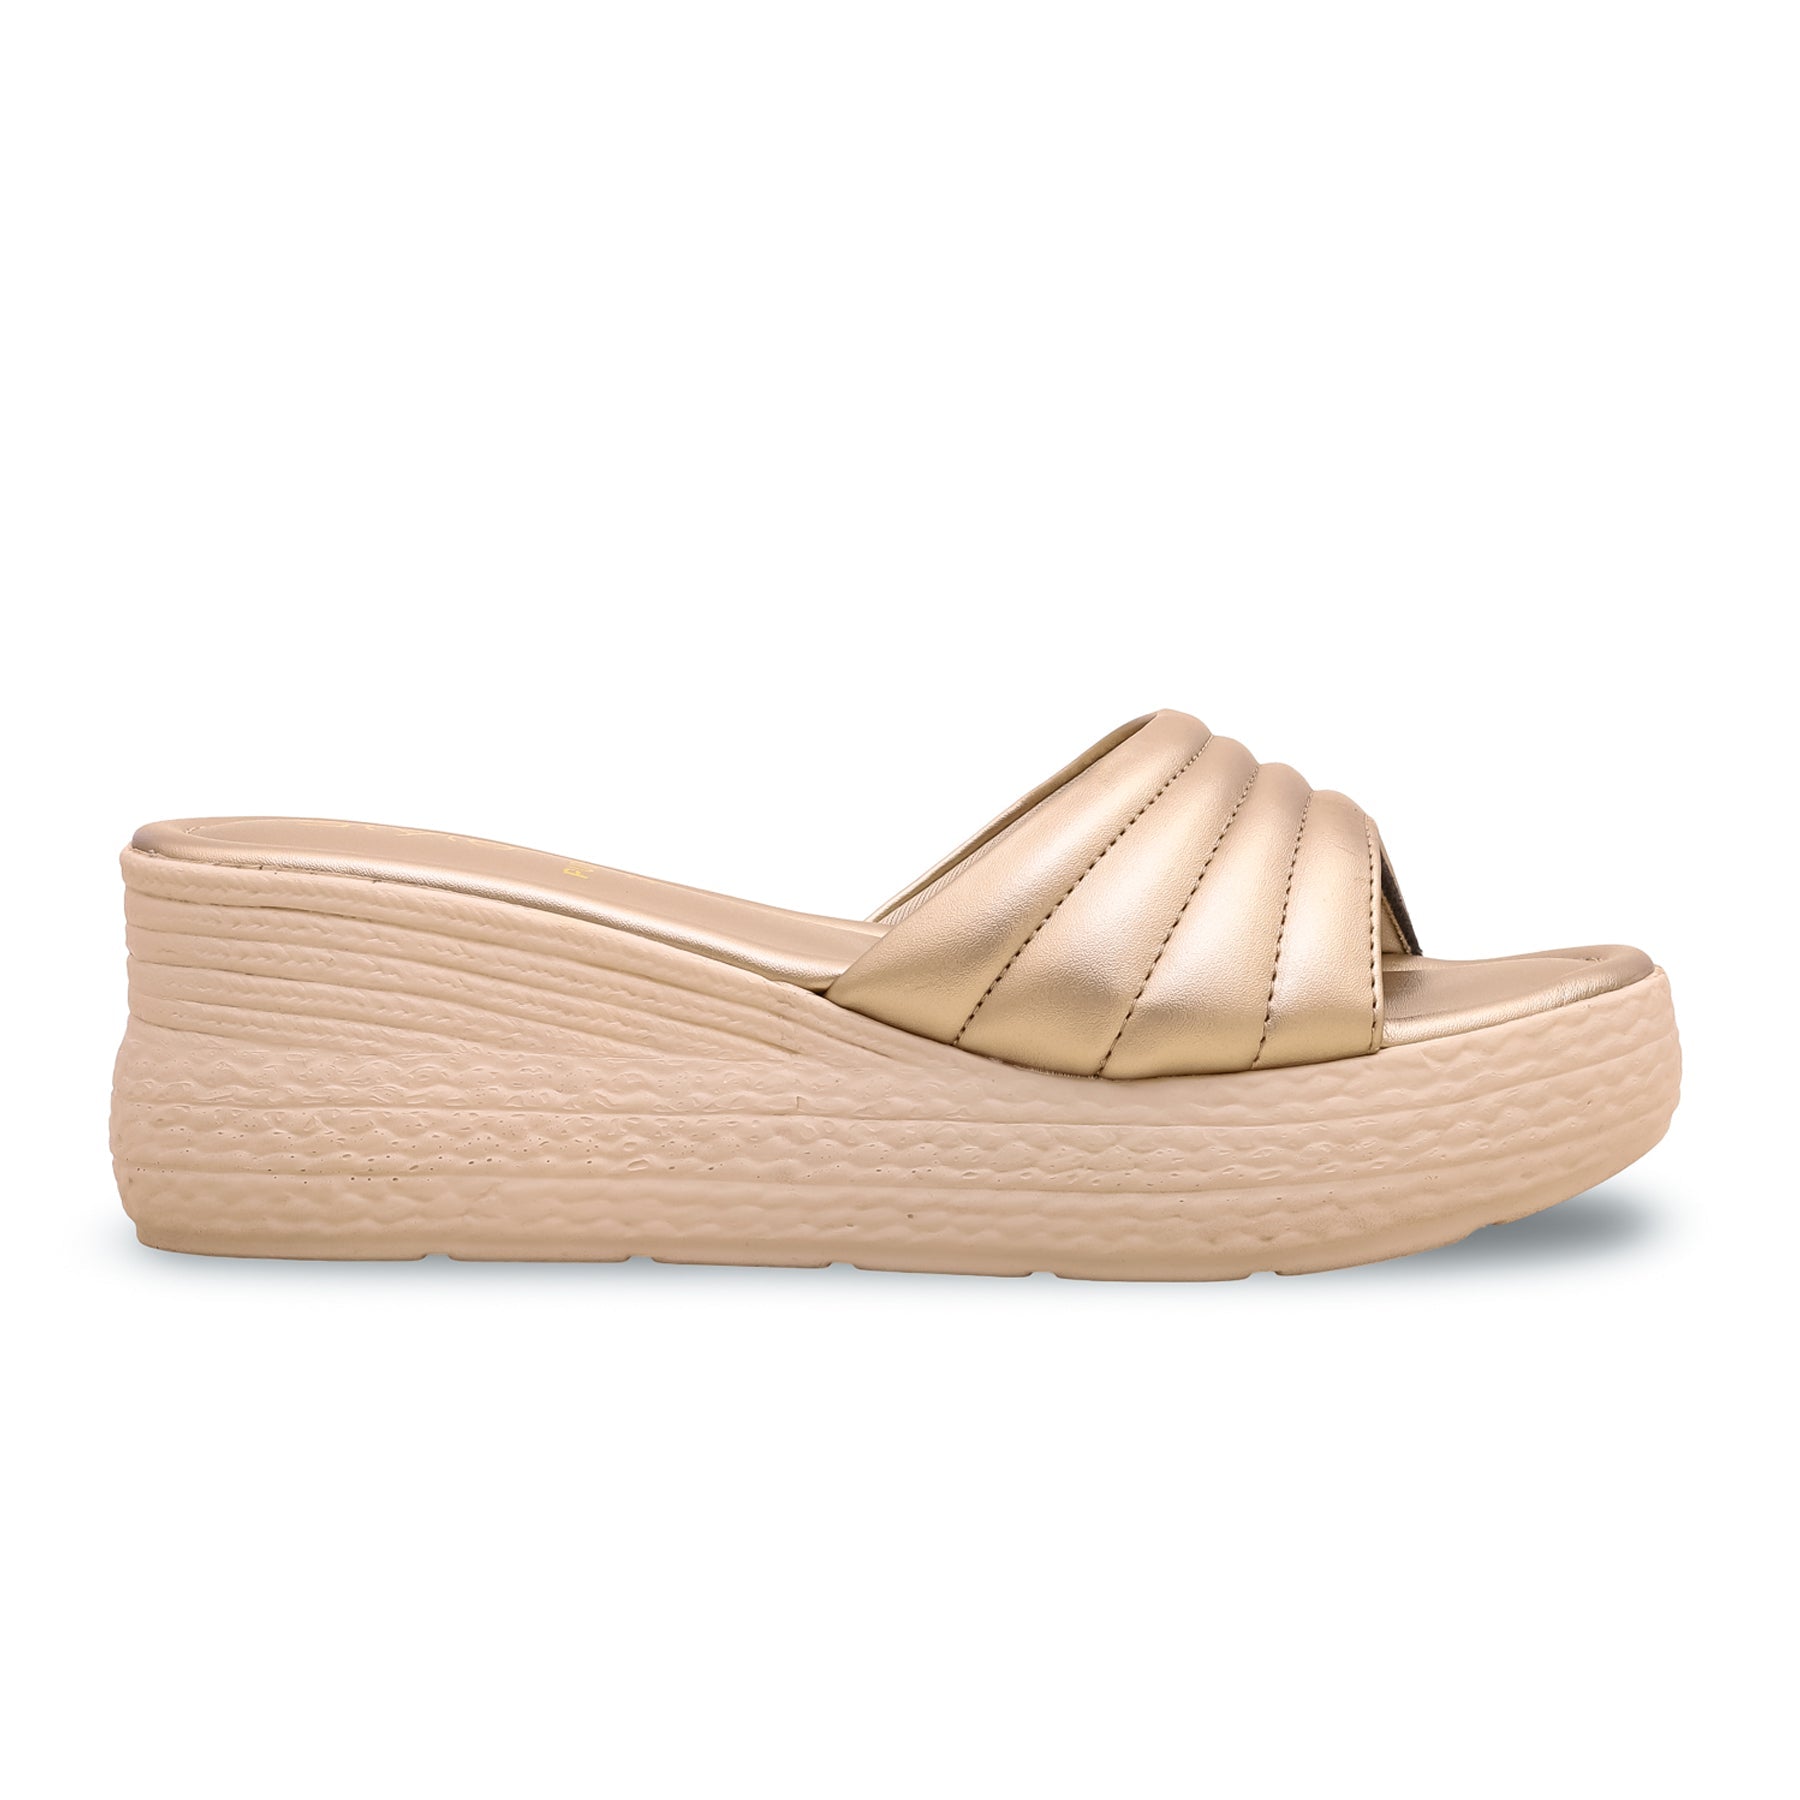 Golden Formal Sandal PU0181